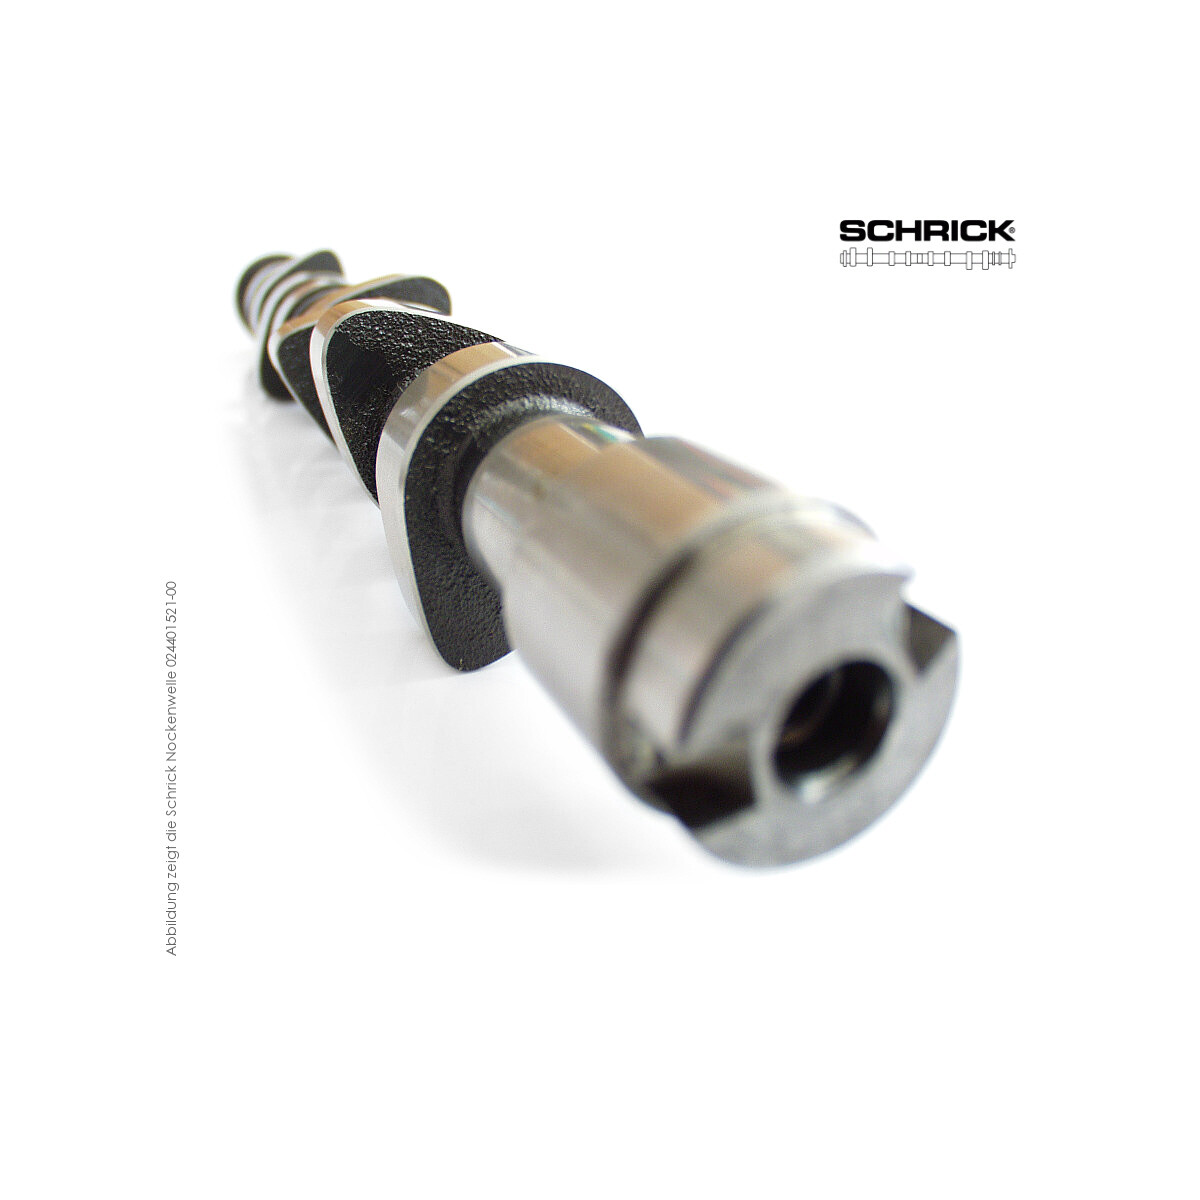 Schrick Nockenwelle für VW Golf 1-2, Polo, Derby, Audi 50 | 0,9-1,3L 8V 4-Zyl.  | 332° Synchron (Schrick 001301320-02)